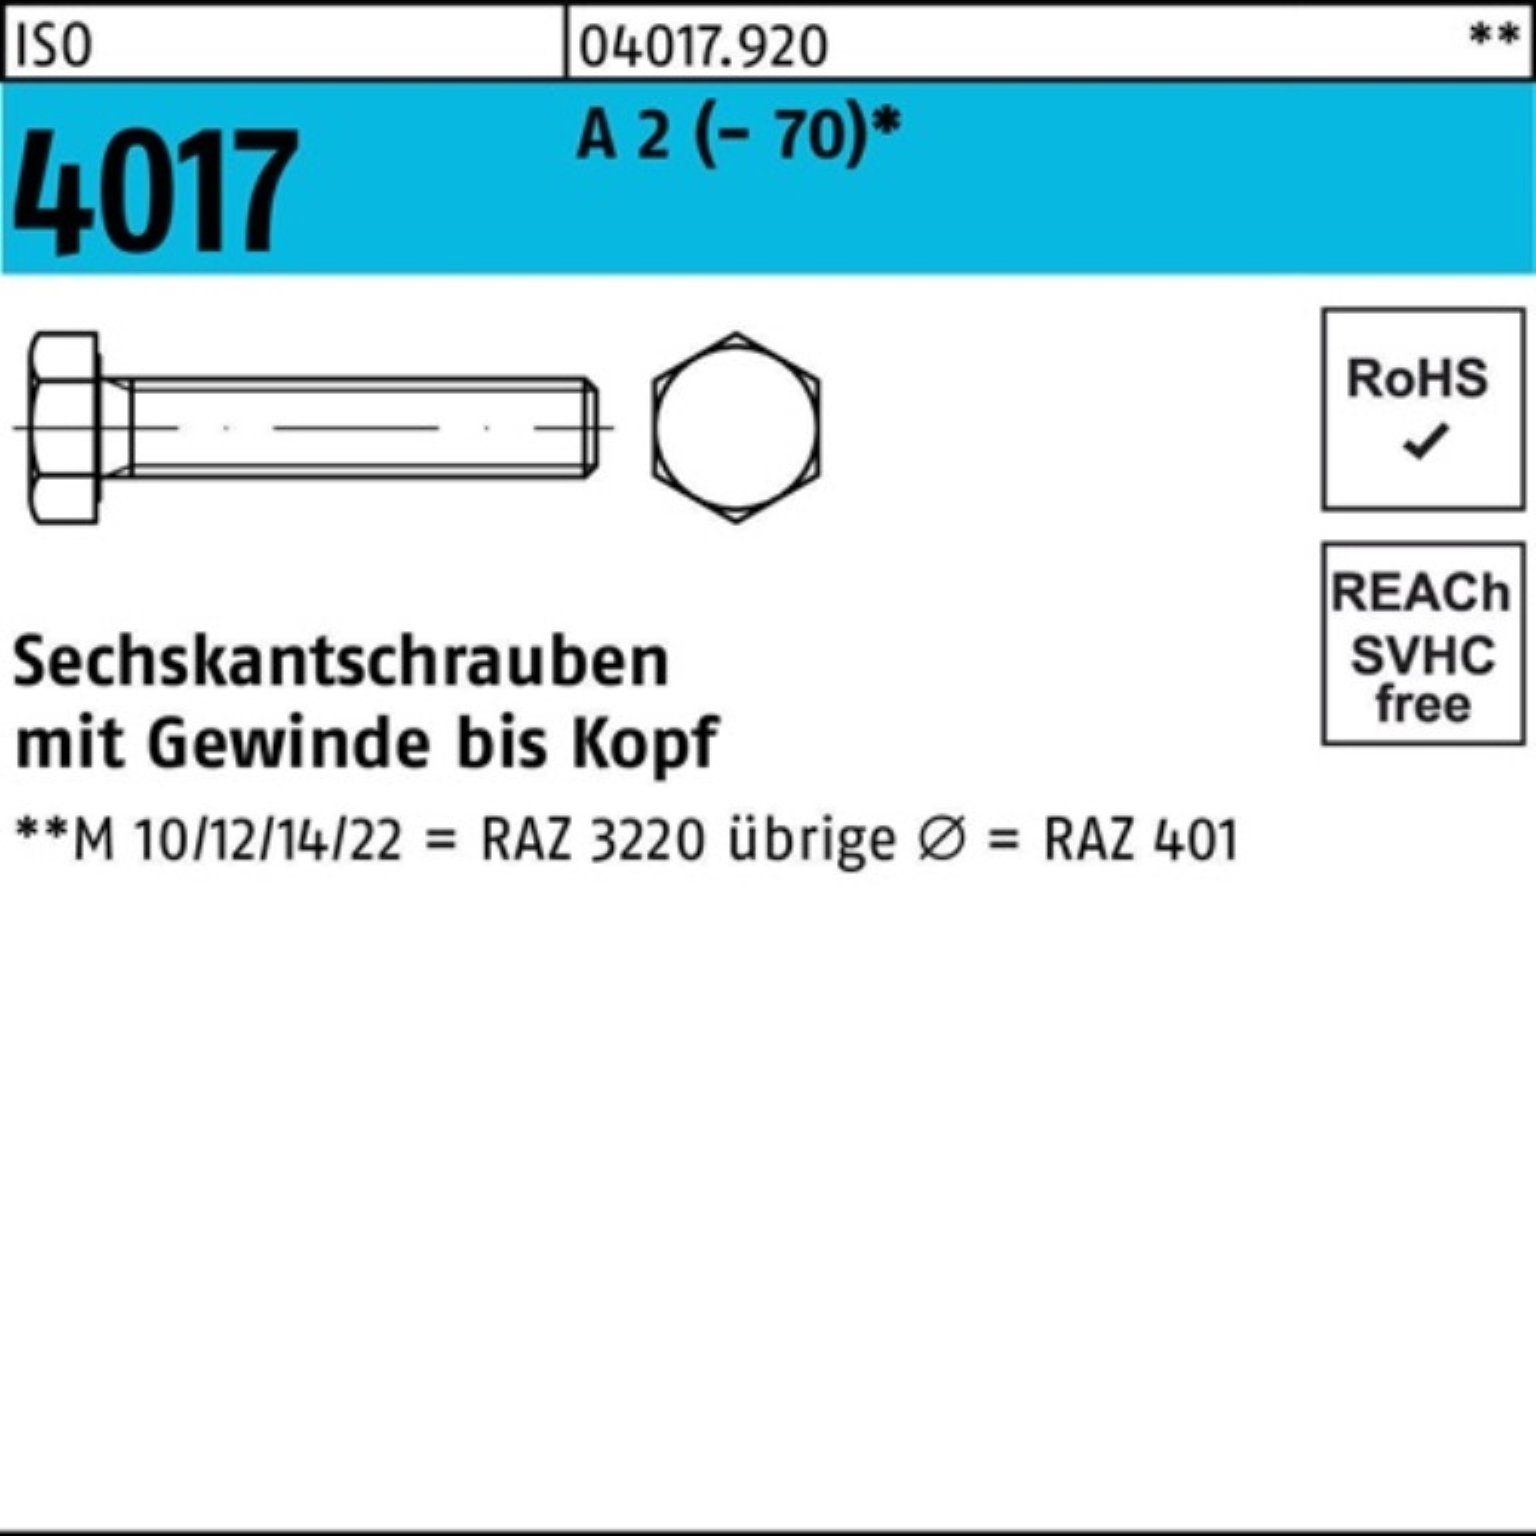 Sechskantschraube I Stück 1 4017 (70) 100er ISO 90 VG A M27x 2 Pack Bufab Sechskantschraube